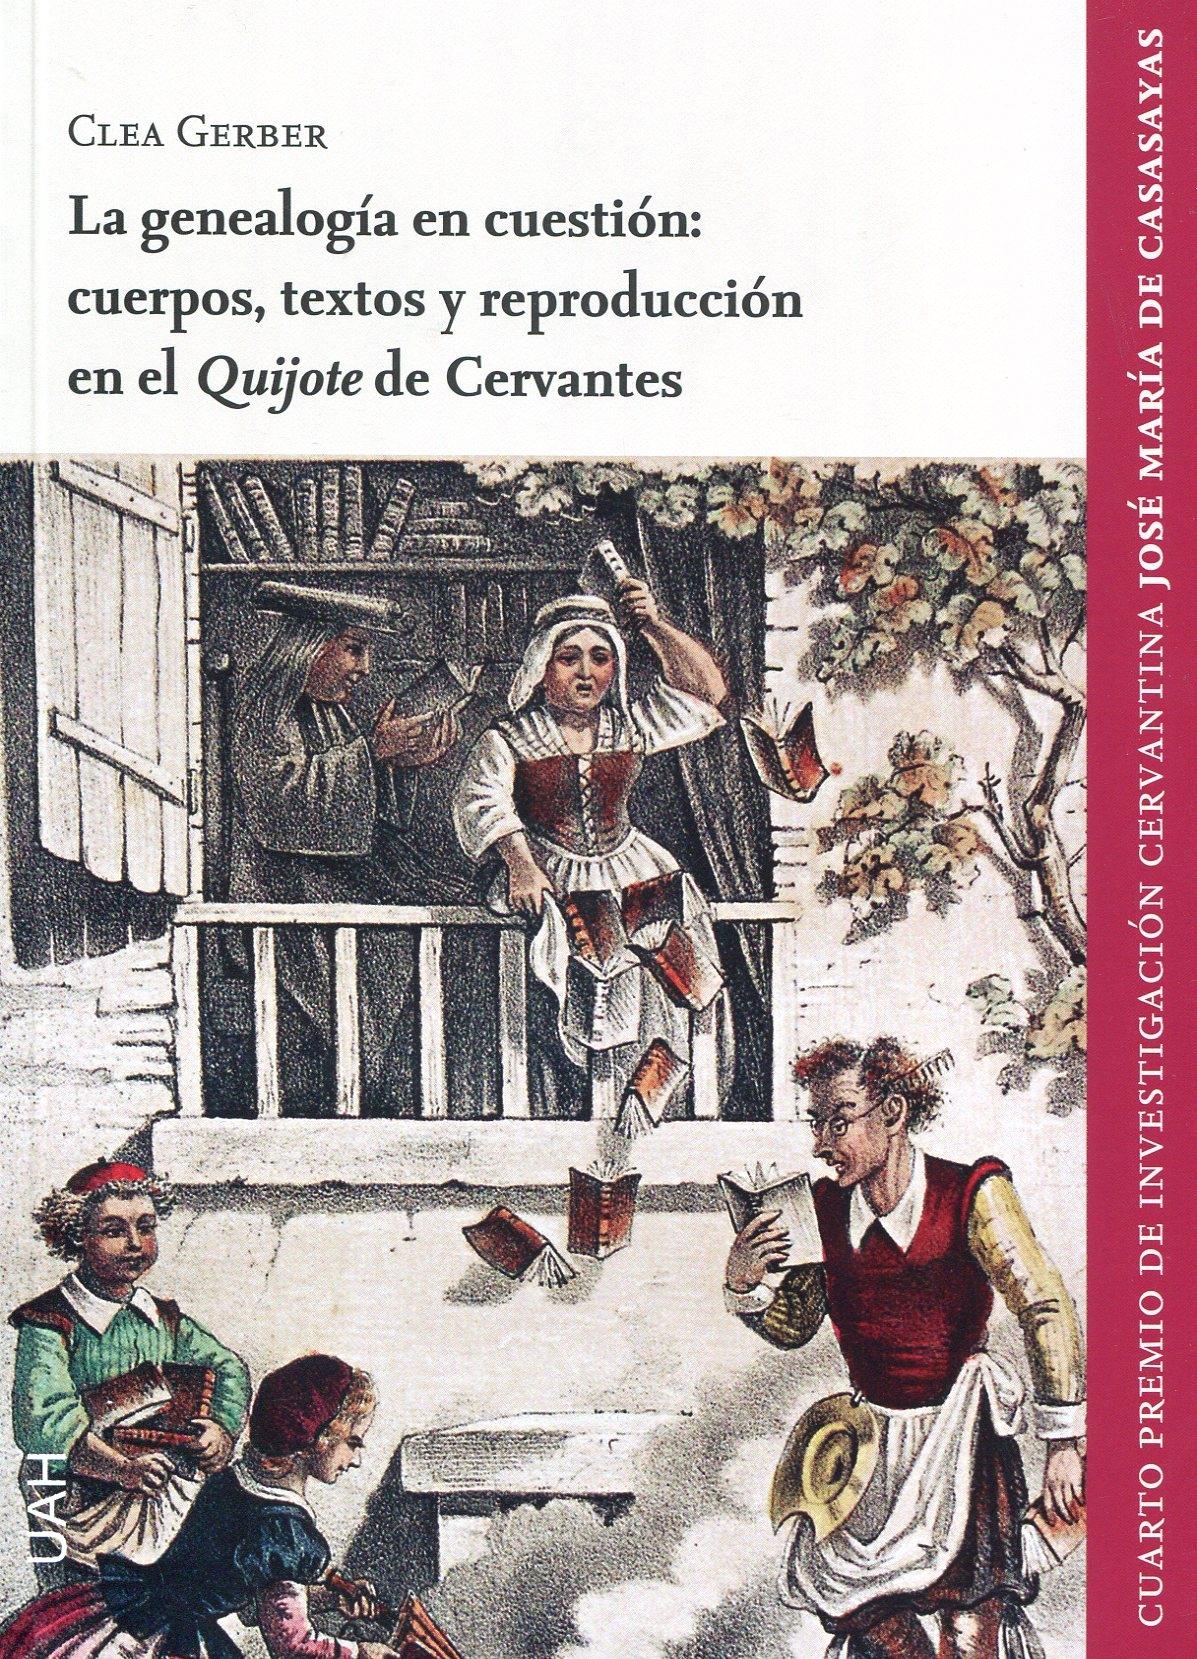 La genealogía en cuestión "Cuerpos, textos y reproducción en el 'Quijote' de Cervantes". 